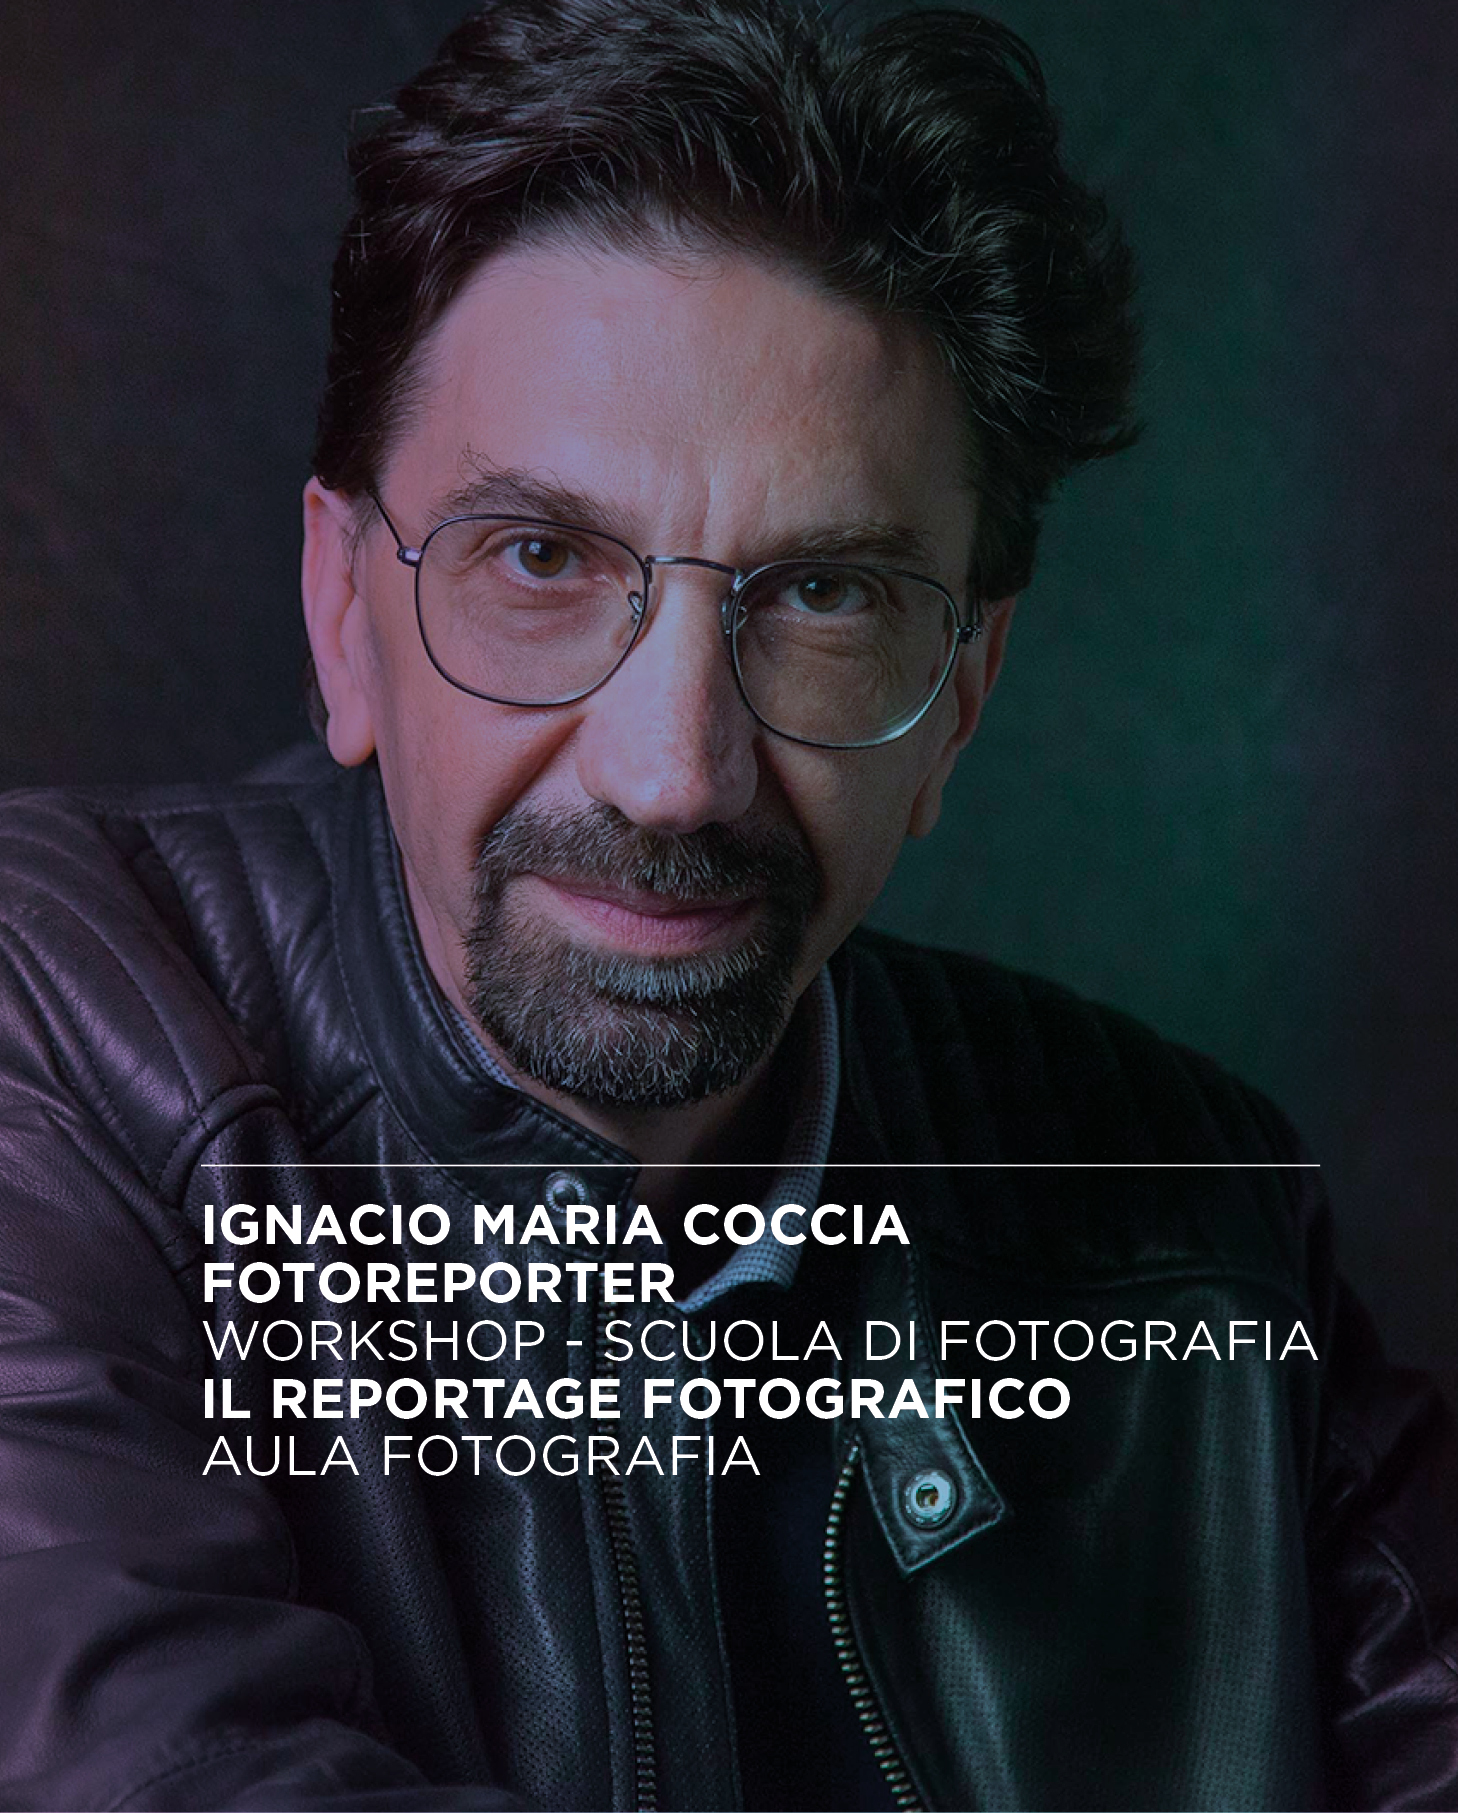 Il reportage fotografico, workshop con il fotoreporter Ignacio Maria Coccia